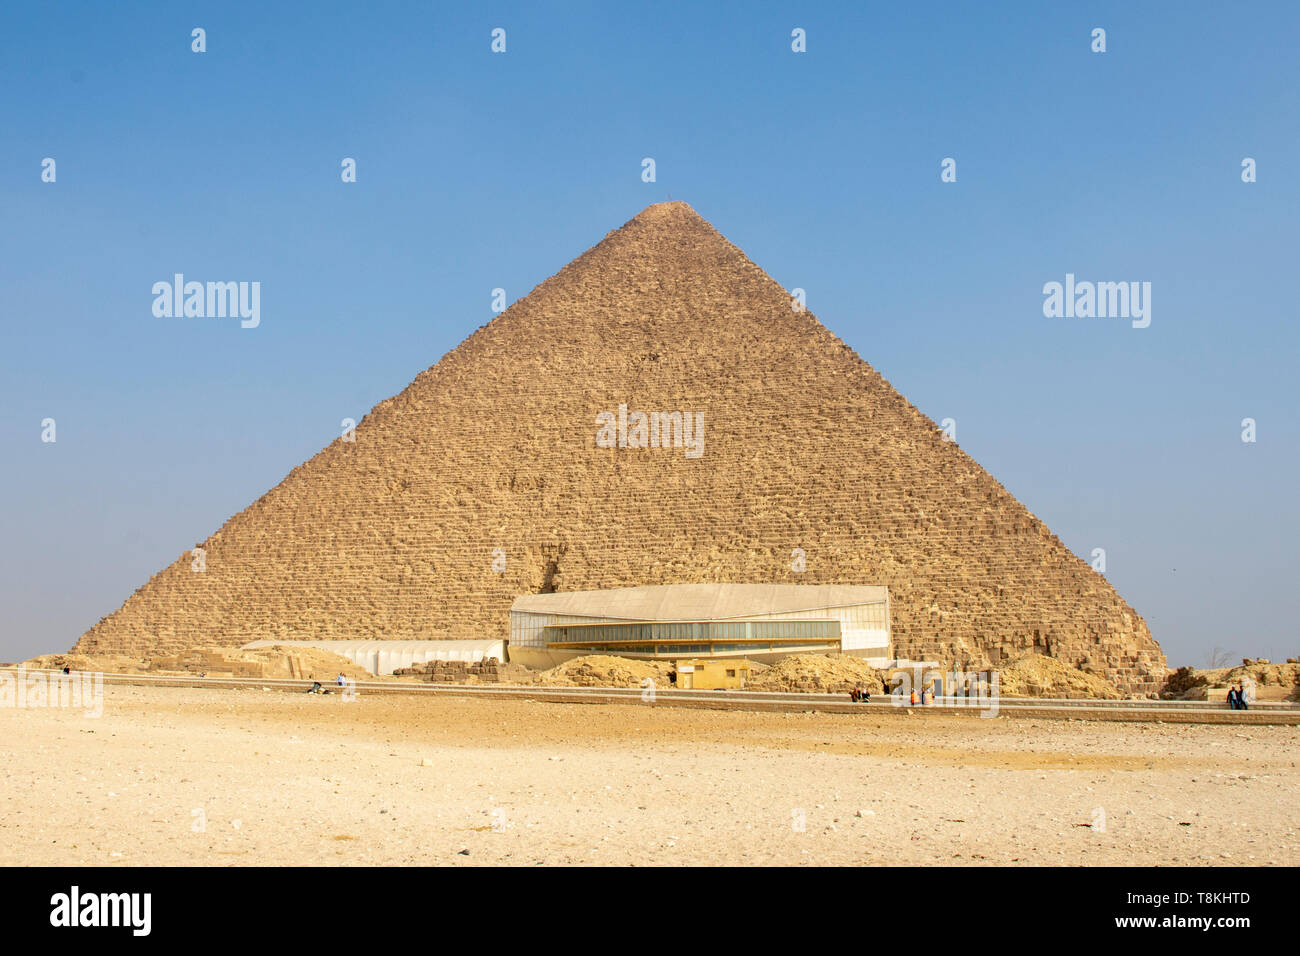 Moderno edificio en la base de la pirámide del faraón Khufu alberga un gran barco de madera construido, casi con toda seguridad por Khufu hace más de 4.000 años. Foto de stock